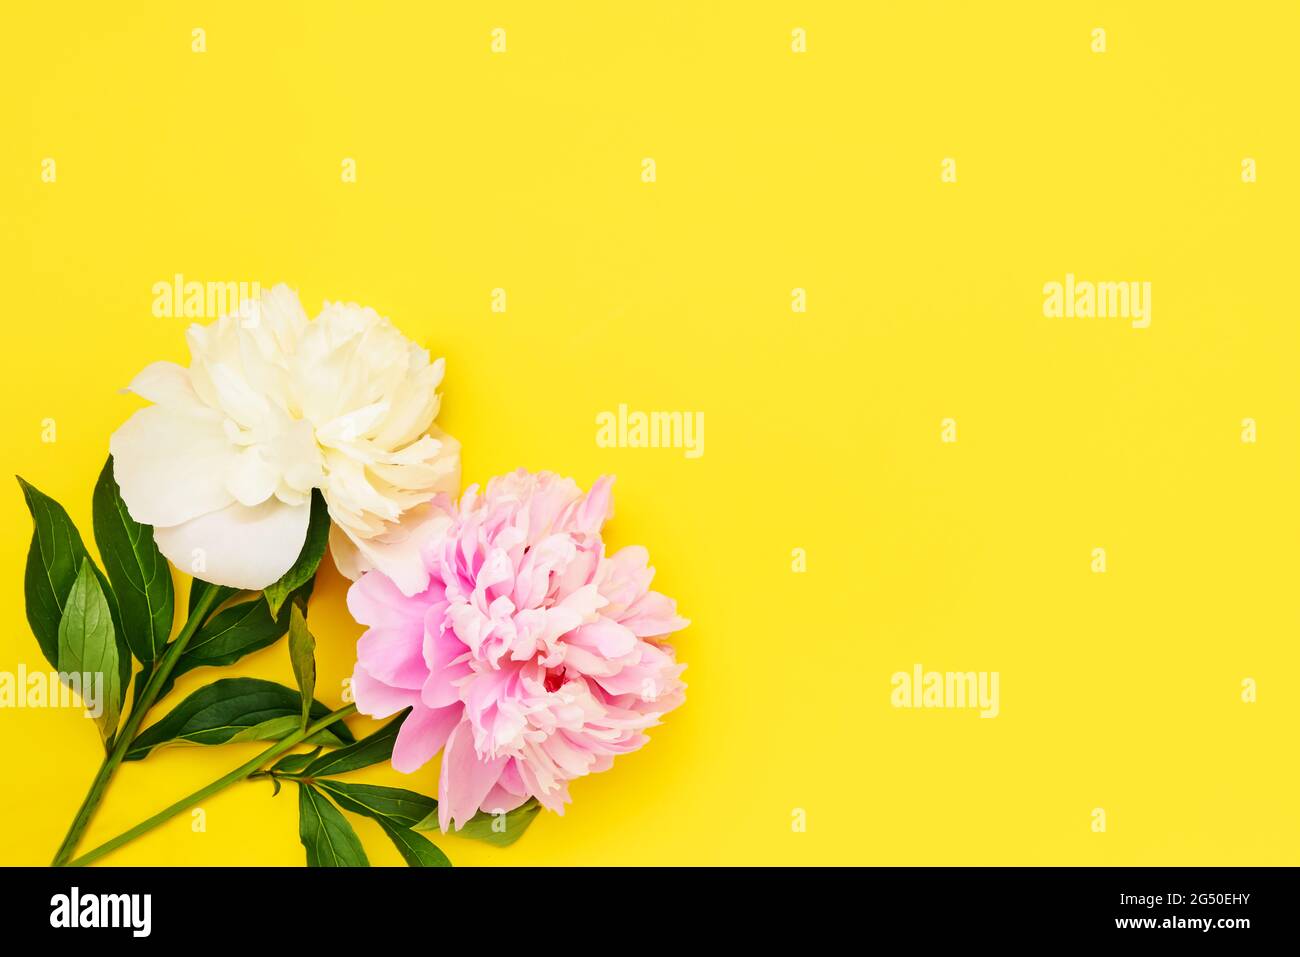 Boutons de fleurs de pivoines roses et blanches sur fond jaune vif. Plan à plat, espace de copie pour le texte Banque D'Images